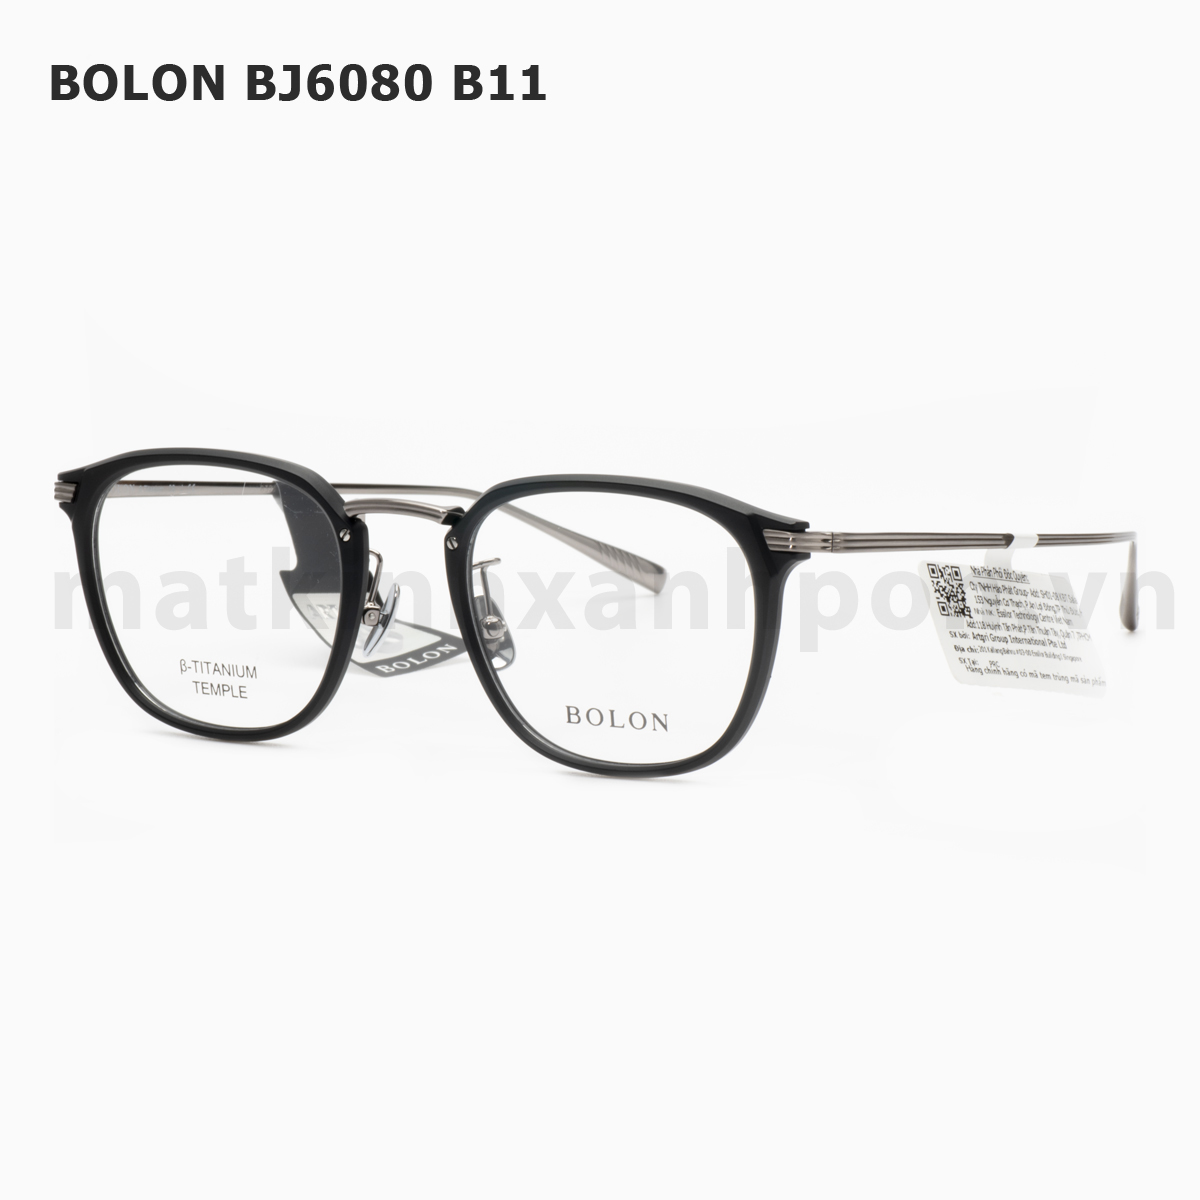 Bolon BJ6080 B11